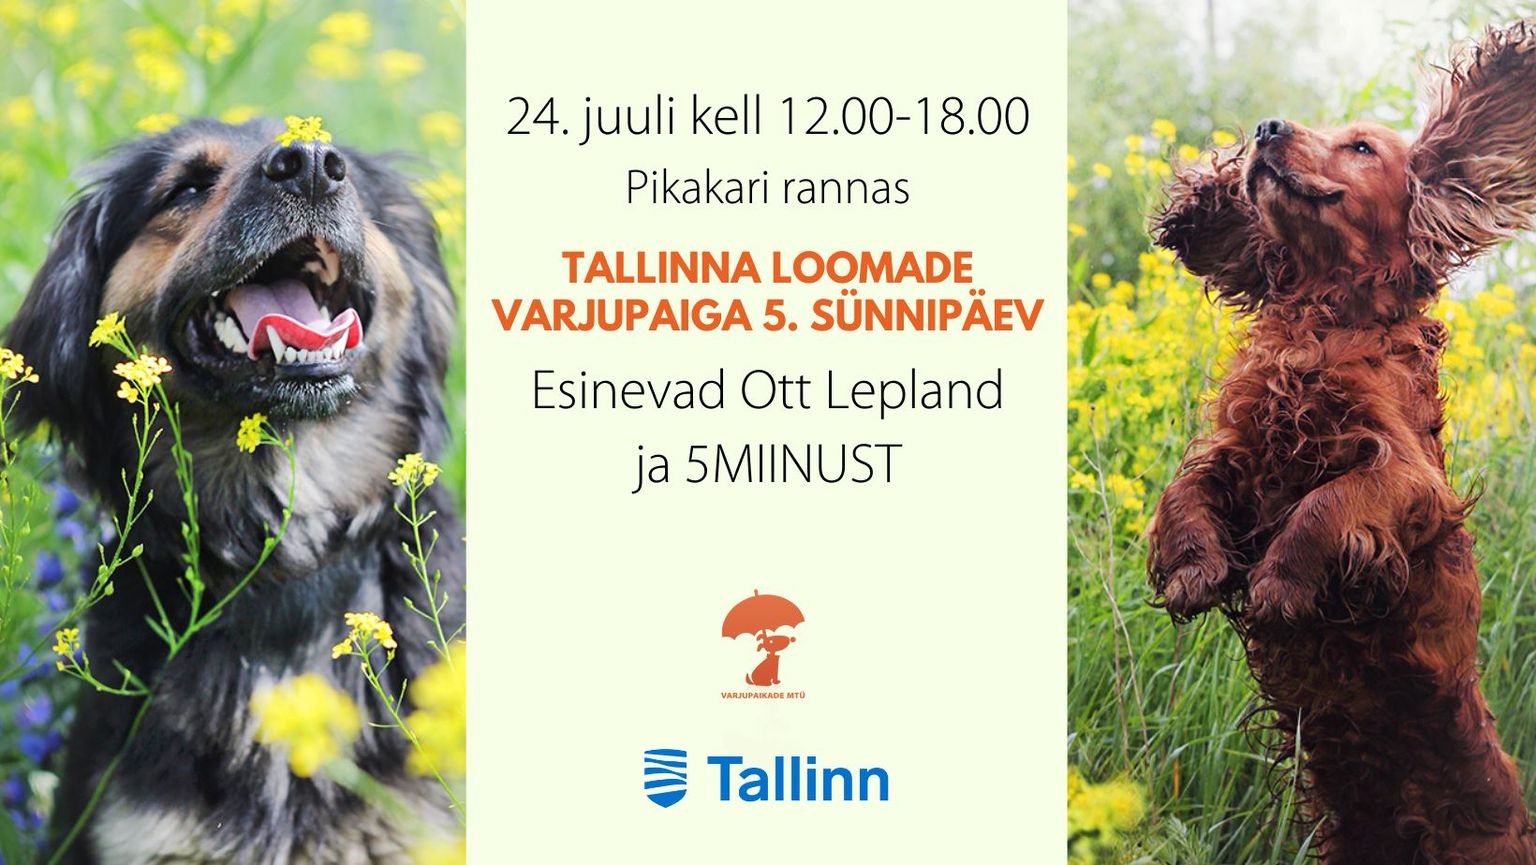 Tallinna loomade varjupaiga sünnipäeval osalevad 5MIINUST ja Ott Lepland